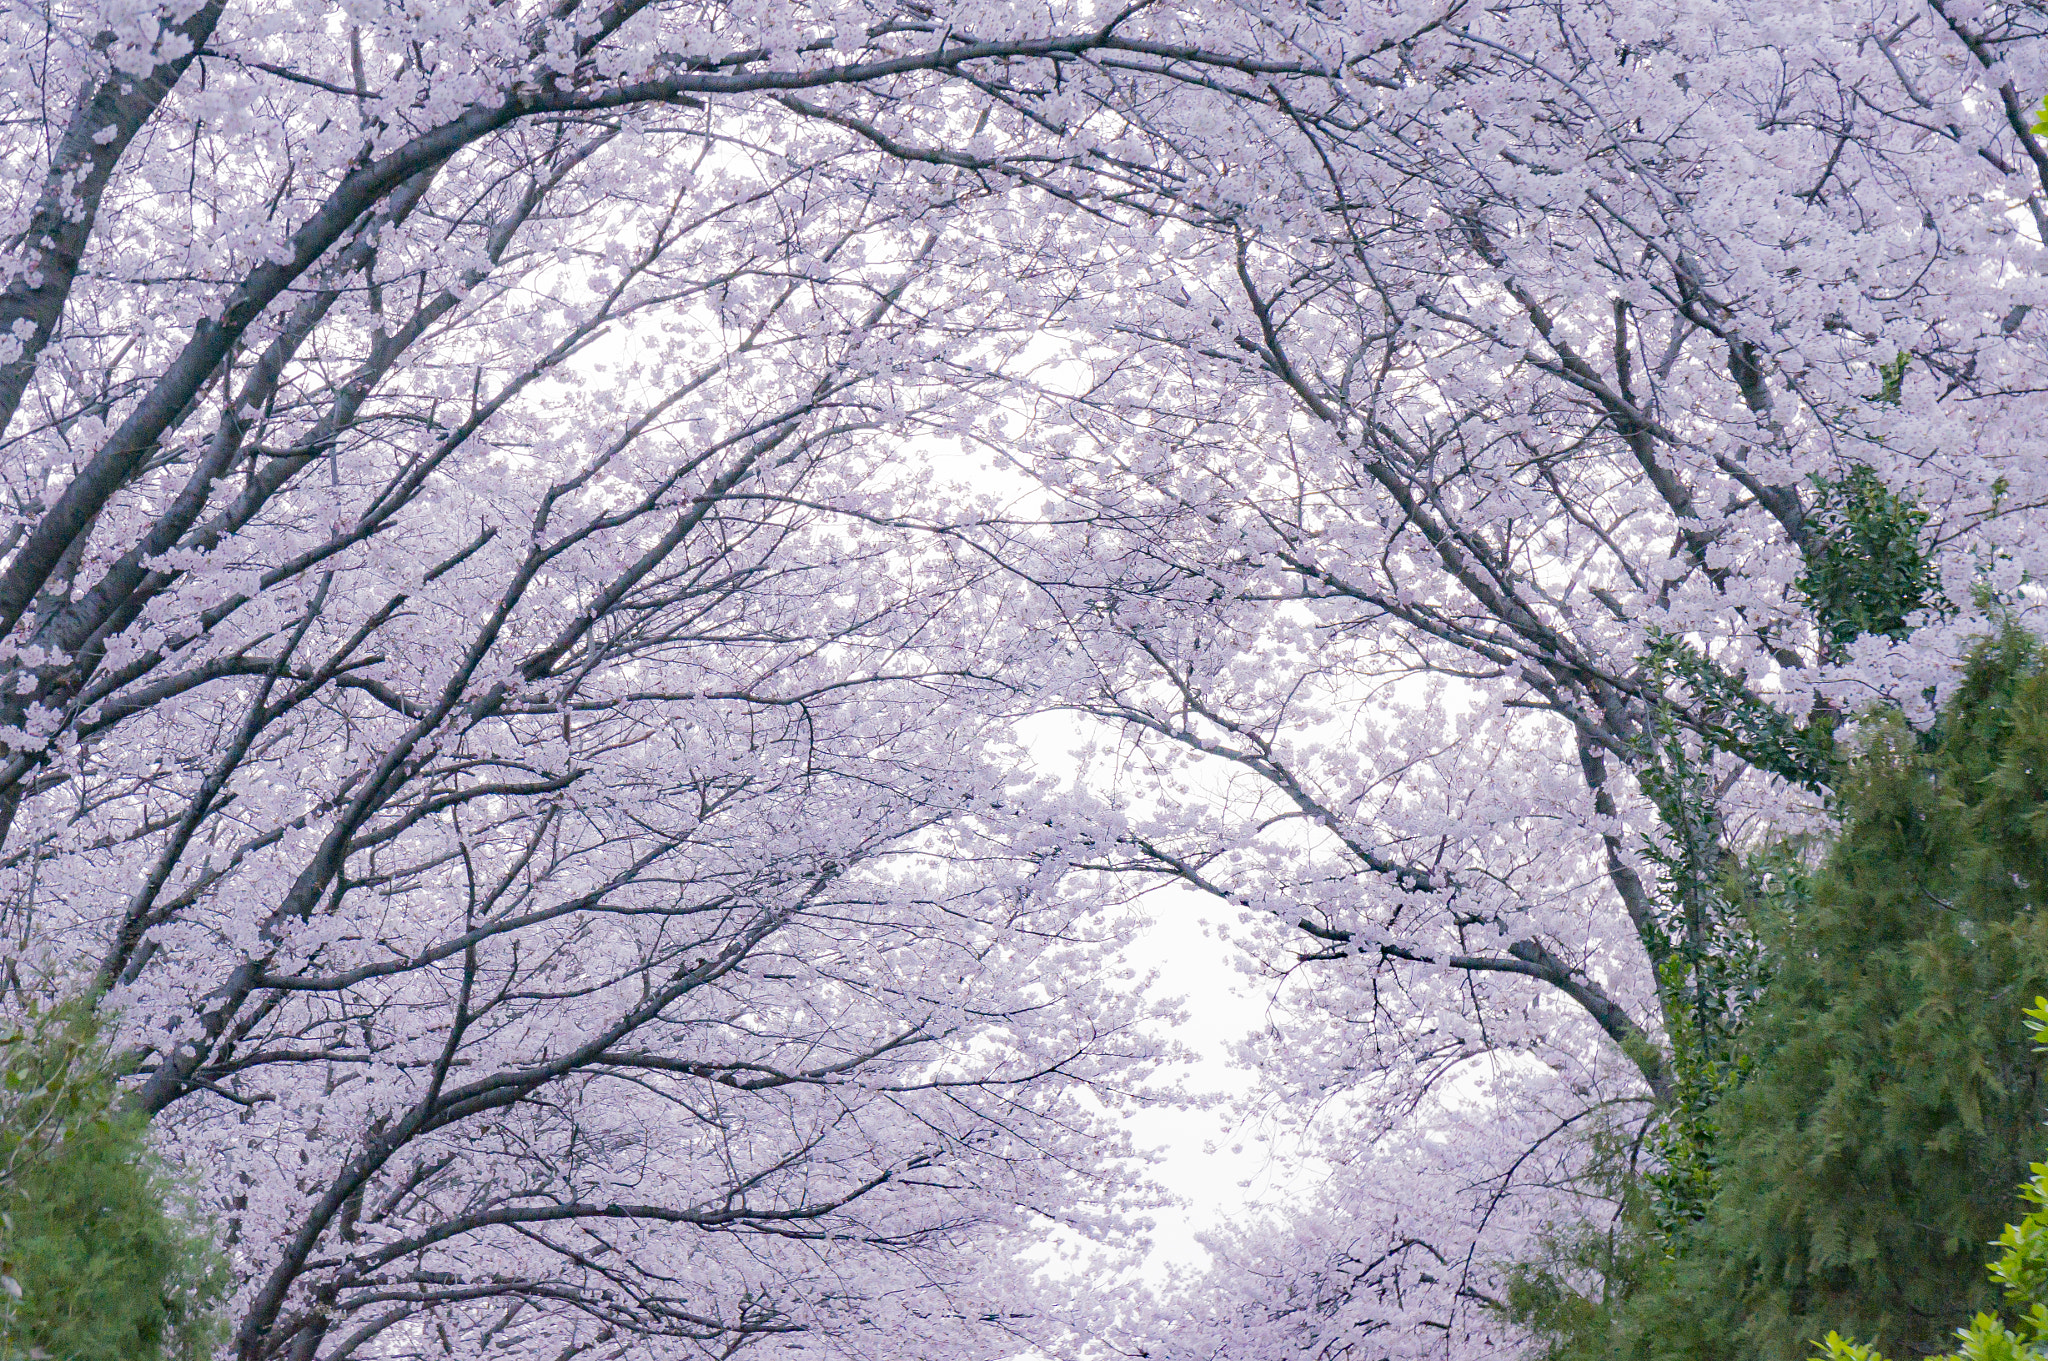 Sony Alpha NEX-5T + Sony Vario-Tessar T* E 16-70mm F4 ZA OSS sample photo. Tunnel of cherry blossom photography